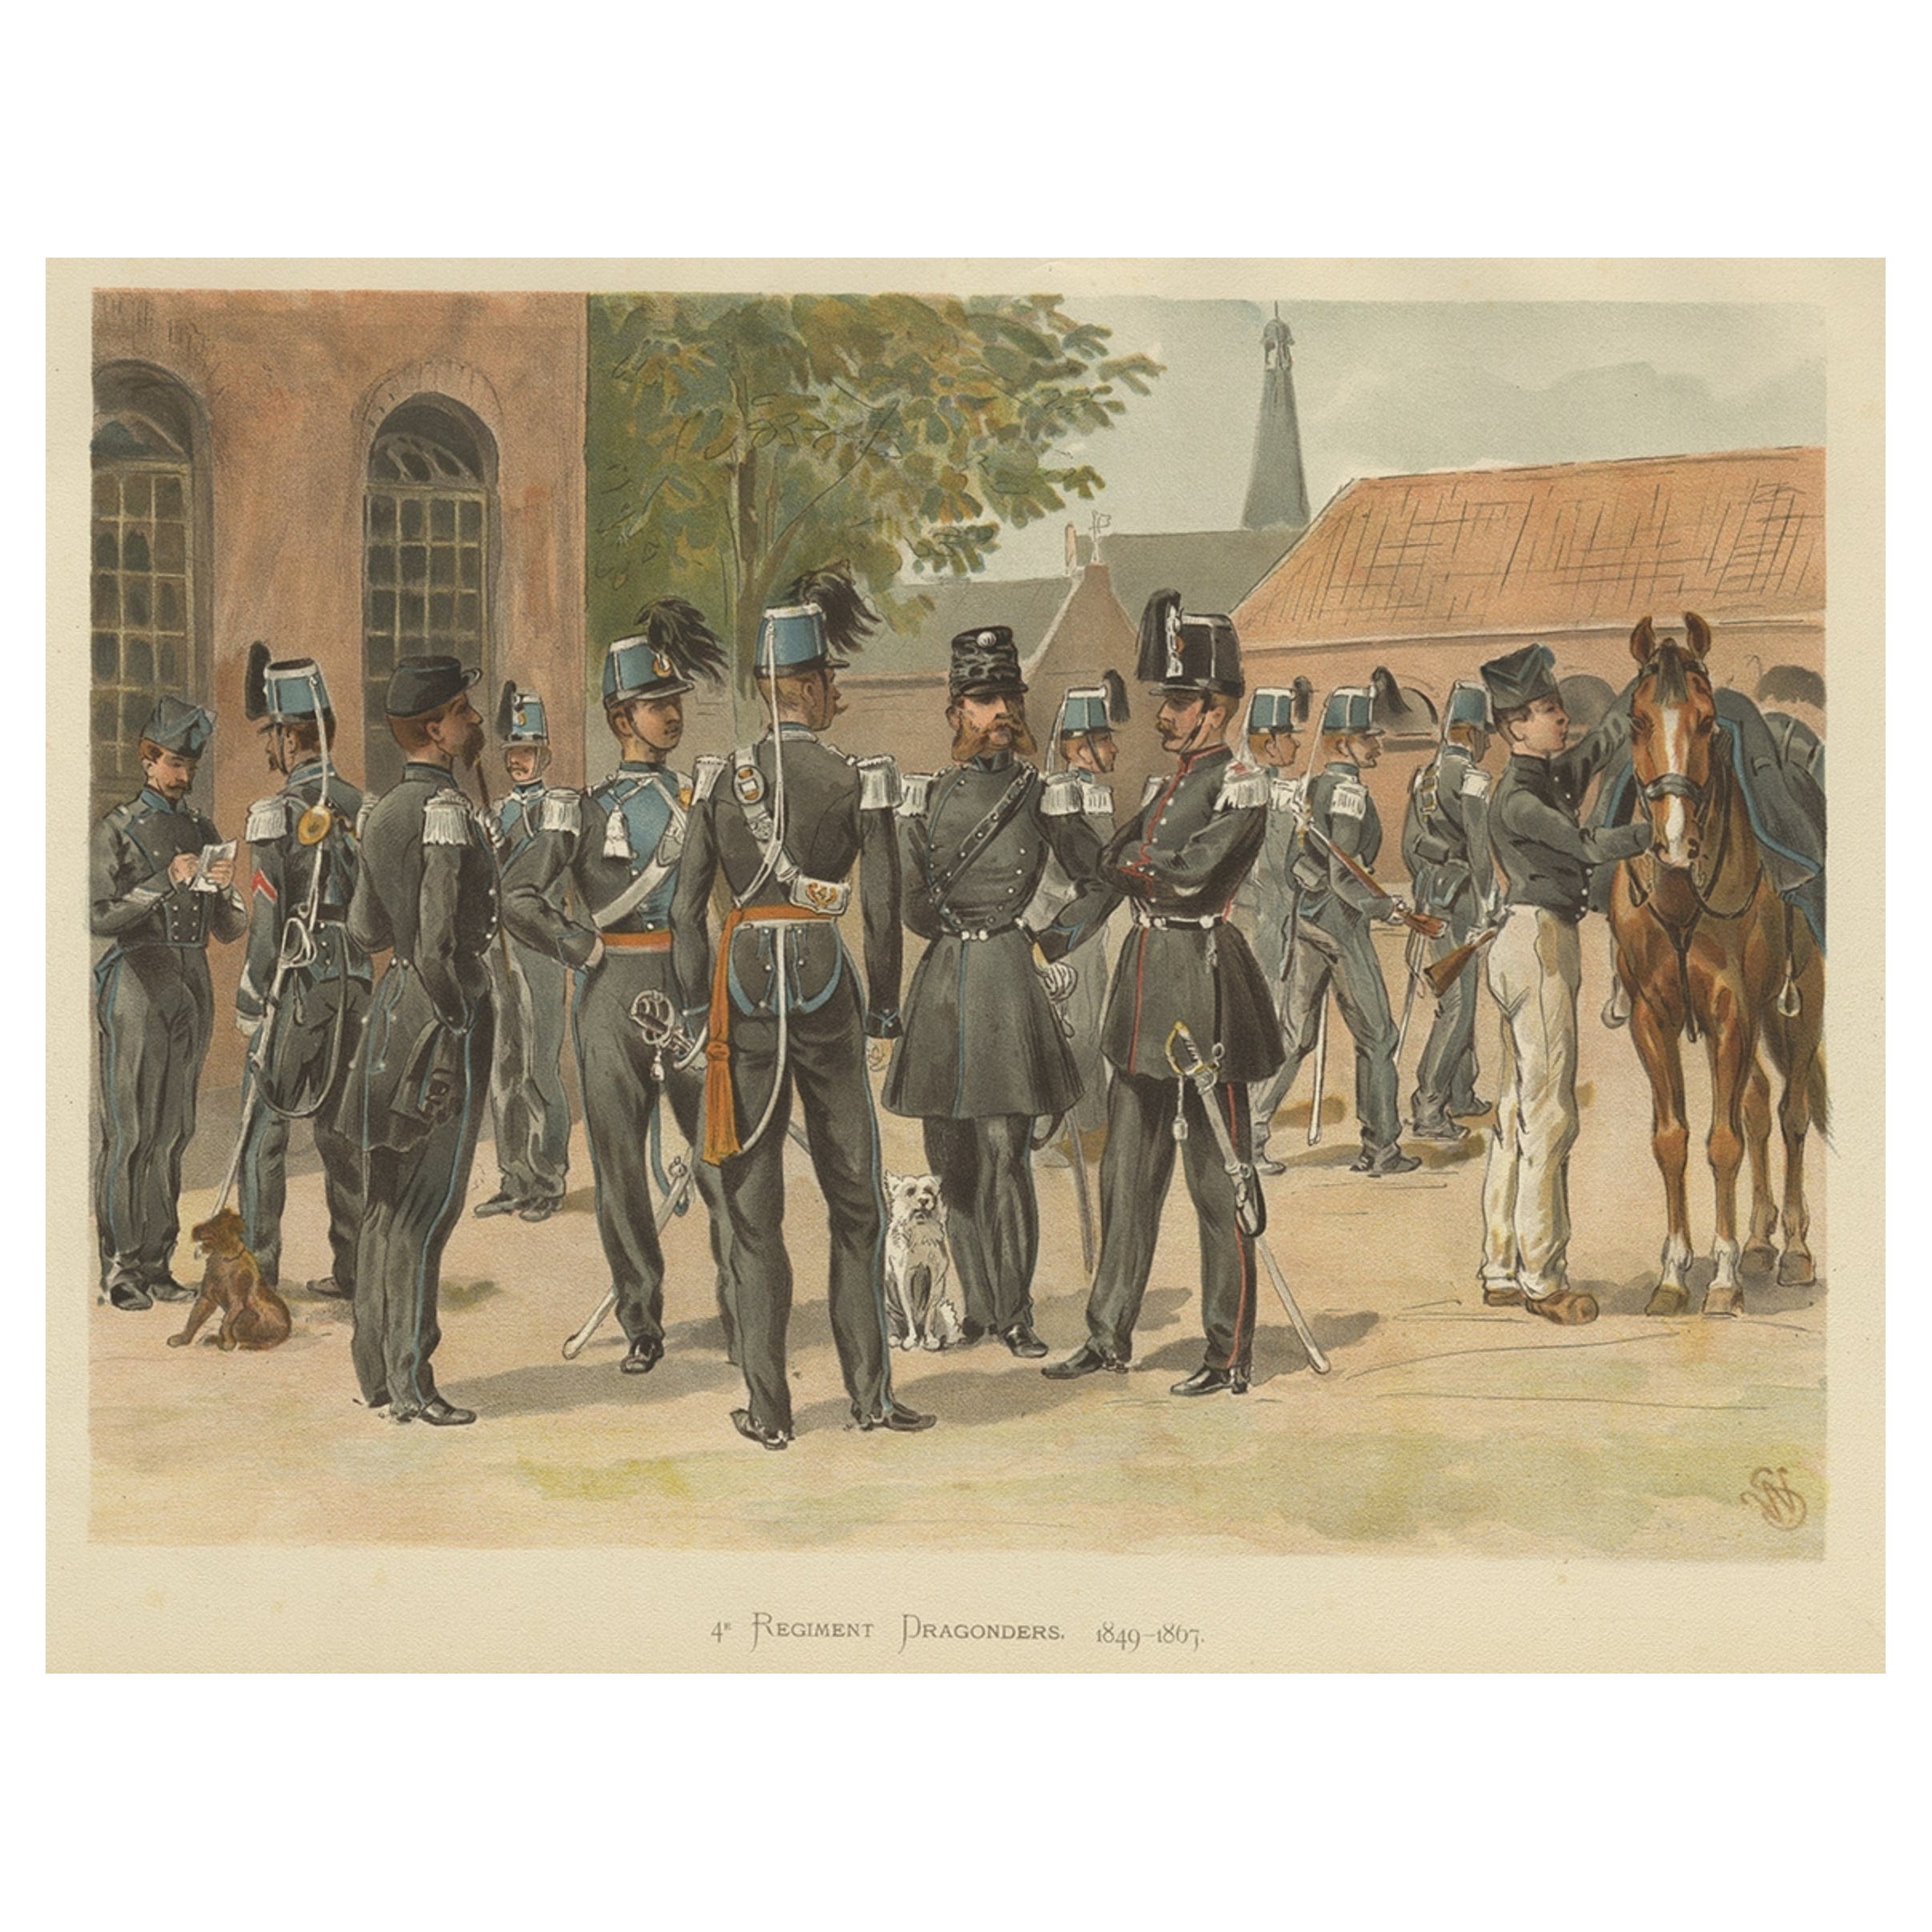 Antique Print of a Regiment of Dutch Dragonders, 1849-1867, 1900